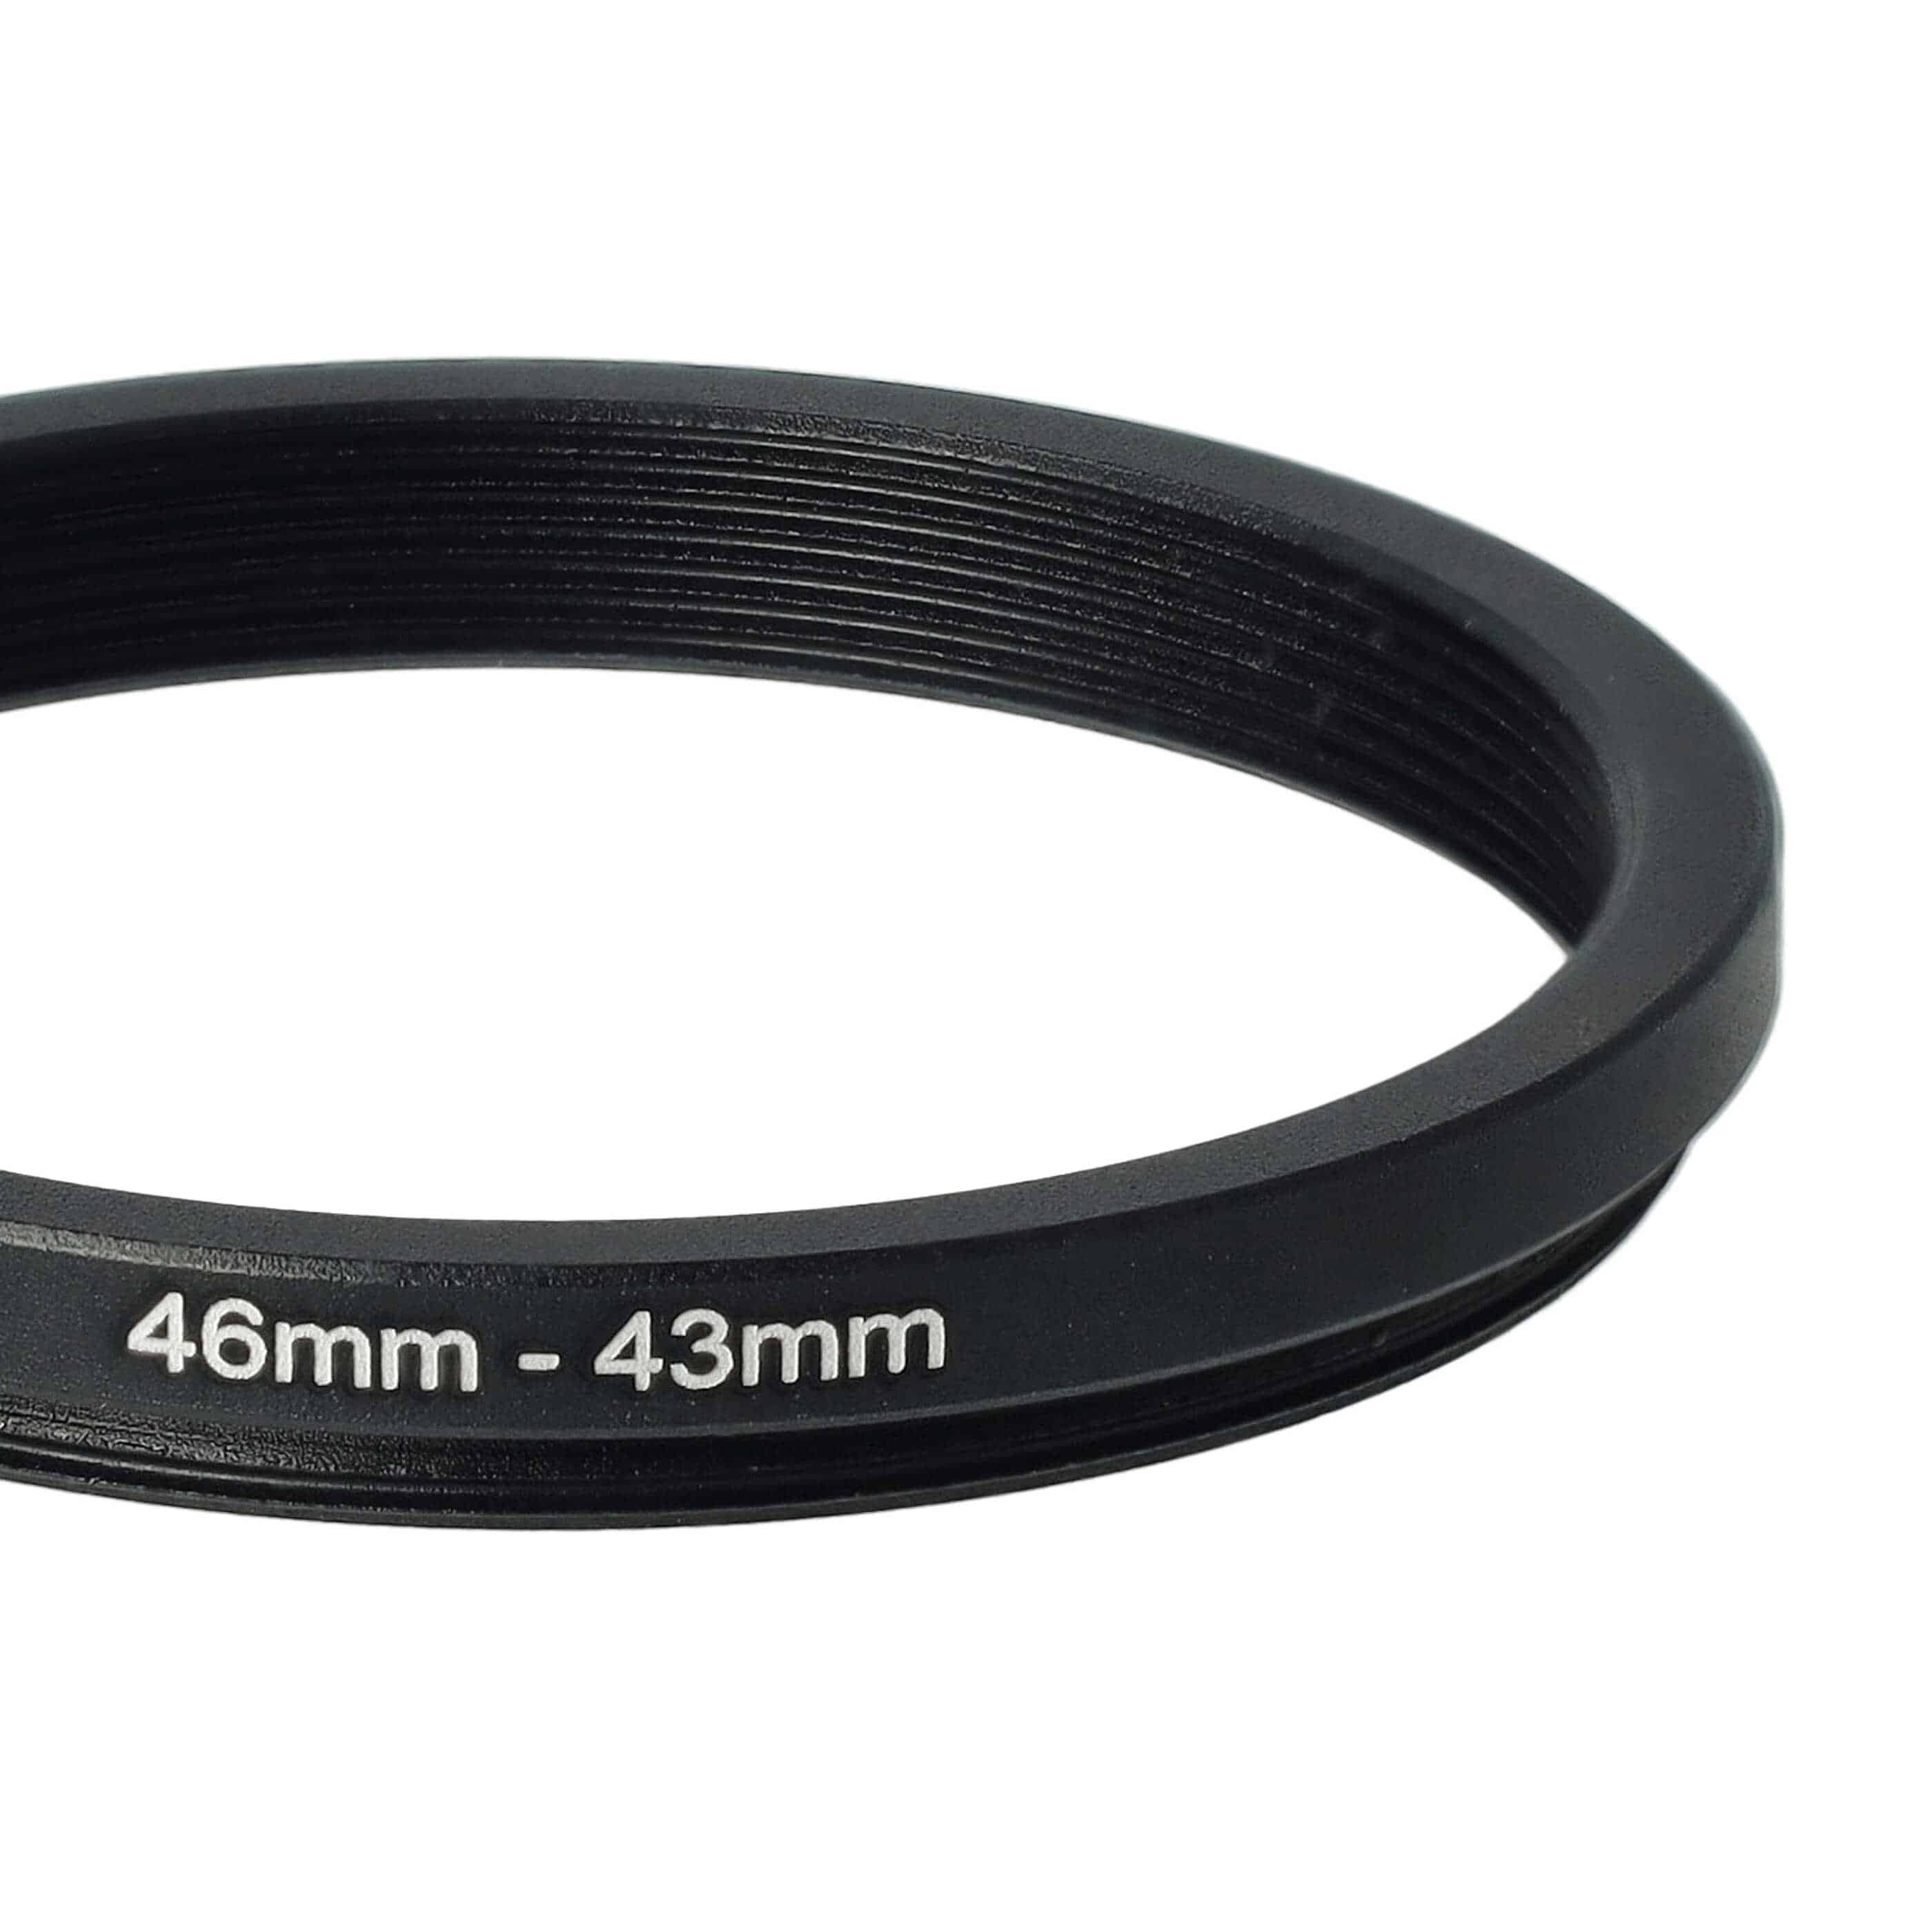 Anello adattatore step-down da 46 mm a 43 mm per obiettivo fotocamera - Adattatore filtro, metallo, nero